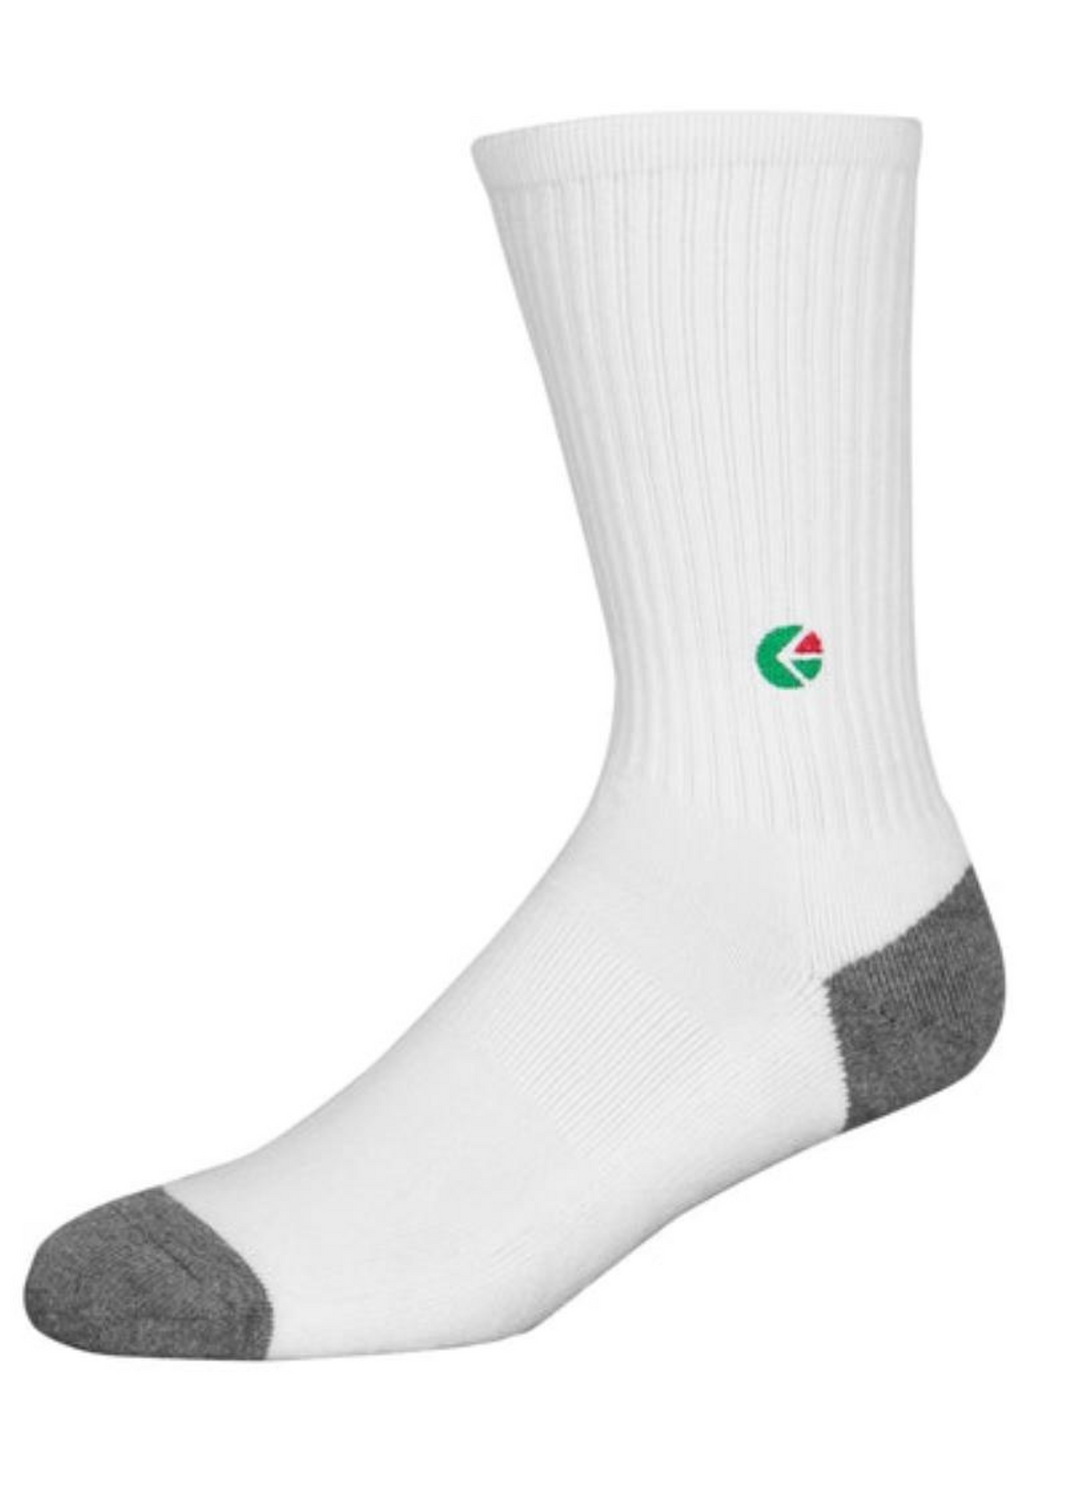 White Crew Socks - Green Logo